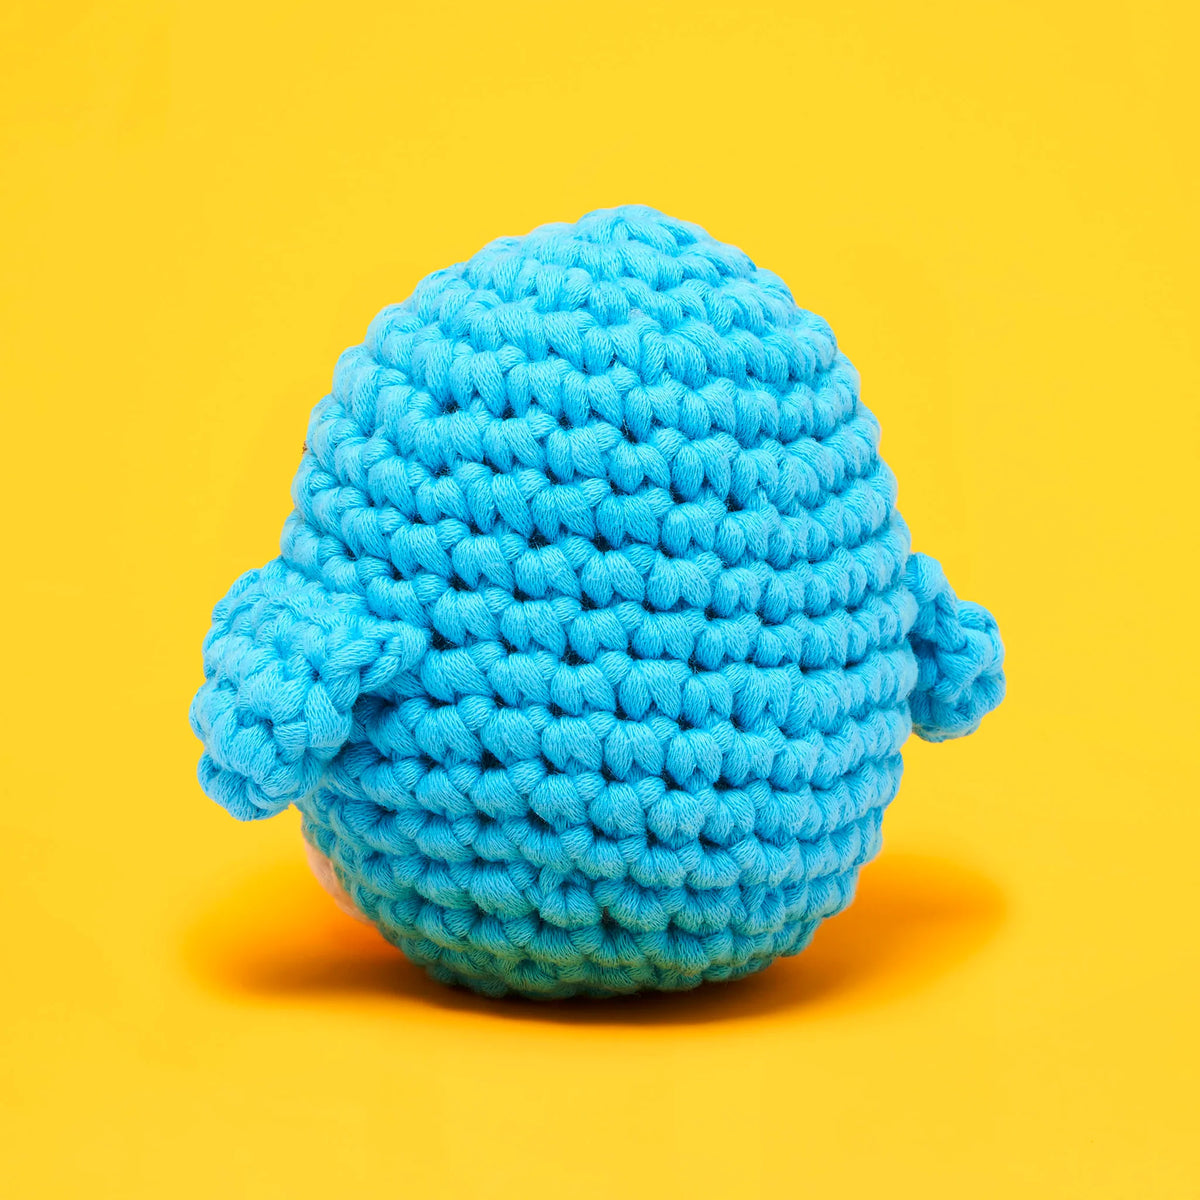 Pierre the Penguin - Crochet Kit